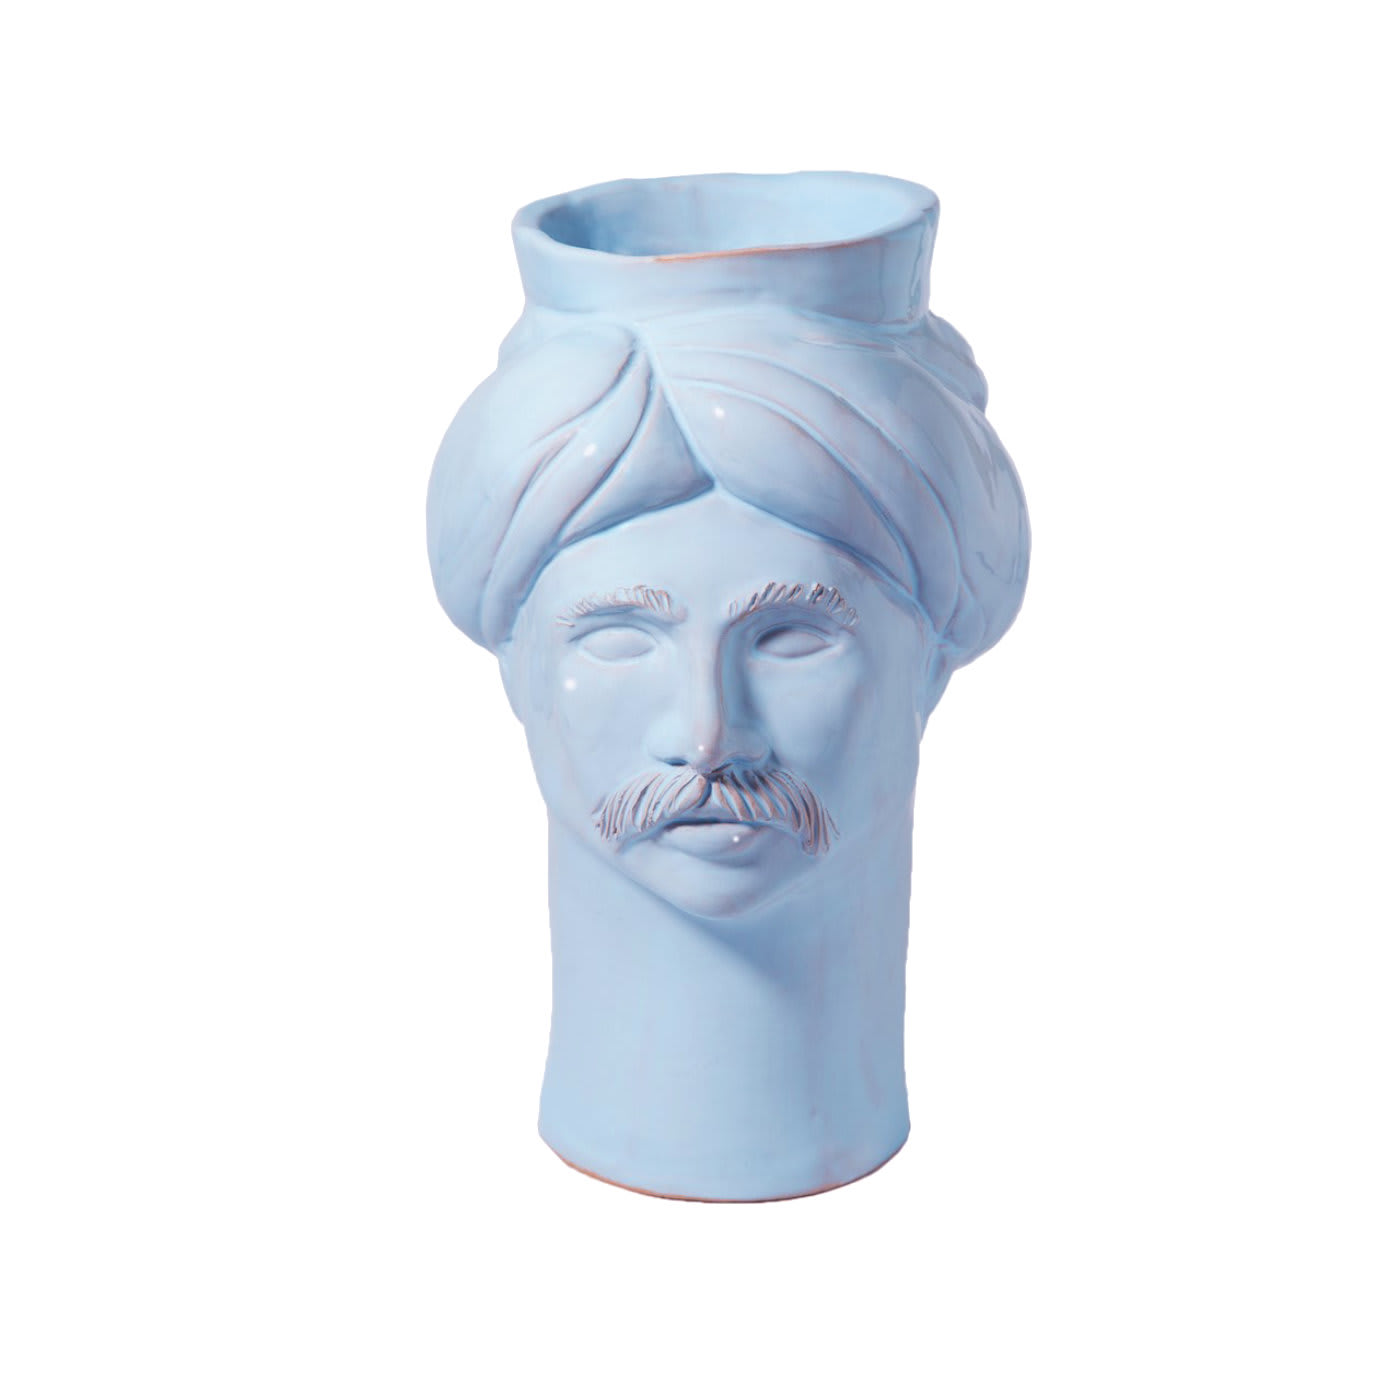 Solimano Vase - Crita Ceramiche